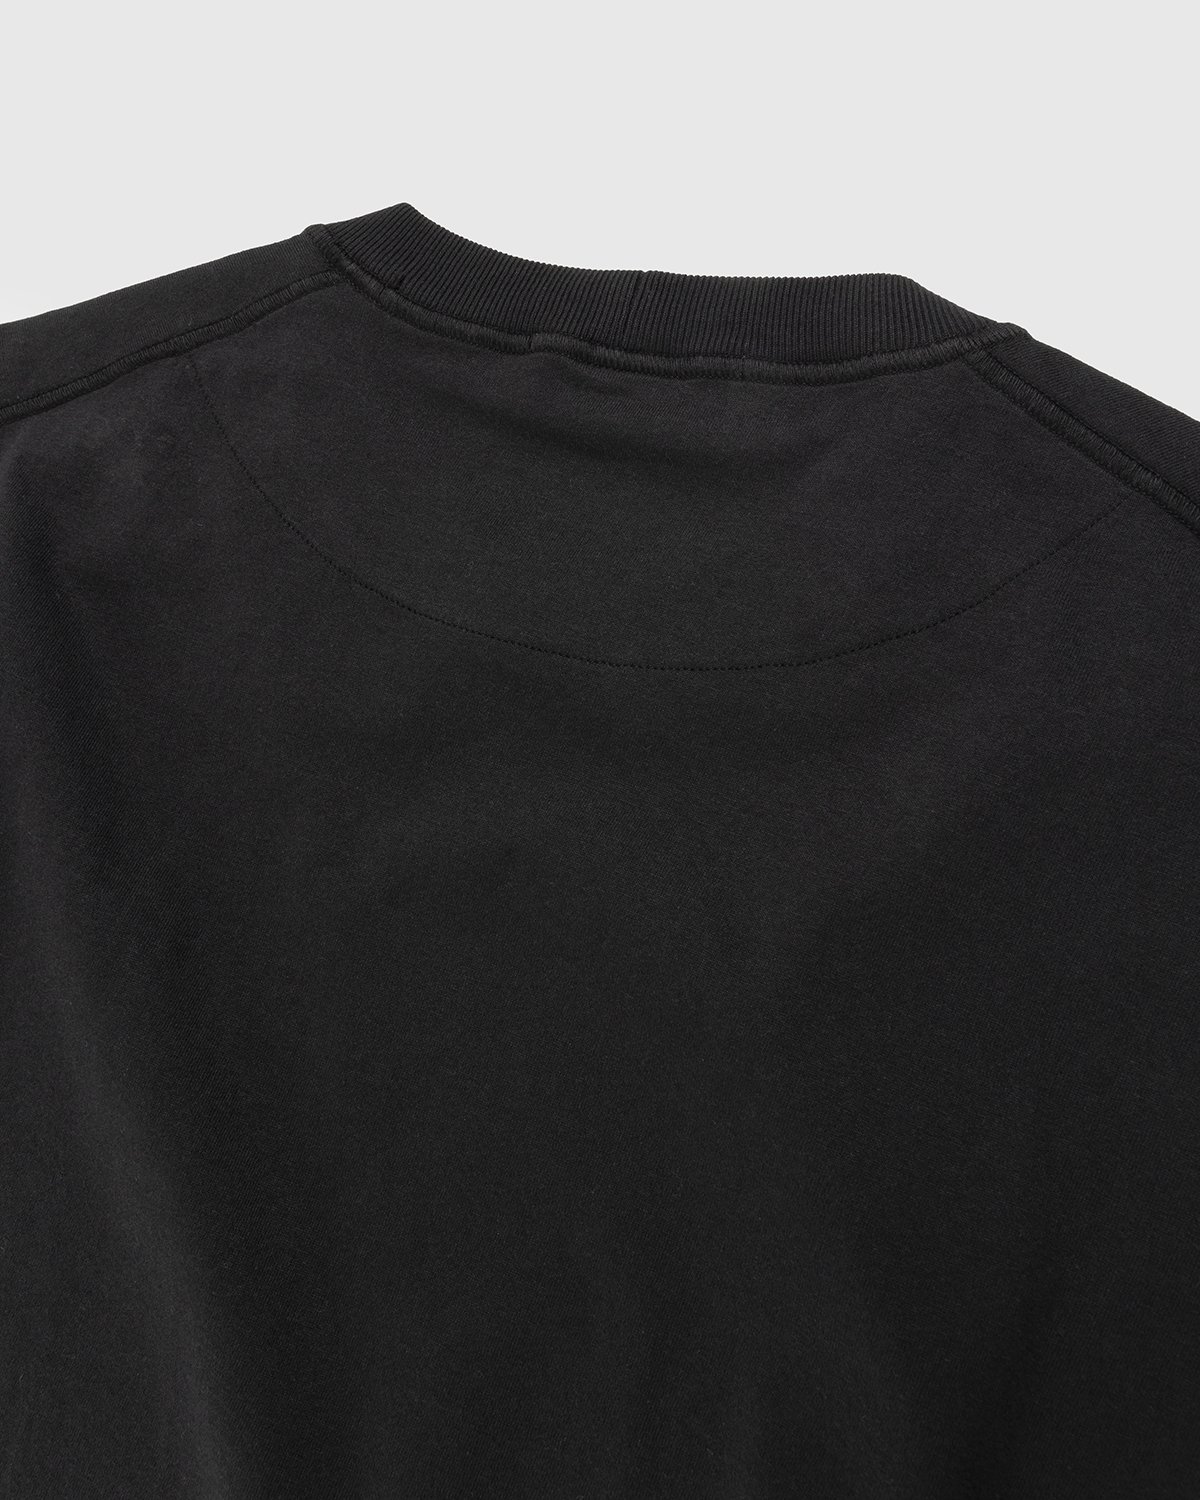 Stone Island - 23757 Garment-Dyed Fissato T-Shirt Black - Clothing - Black - Image 3